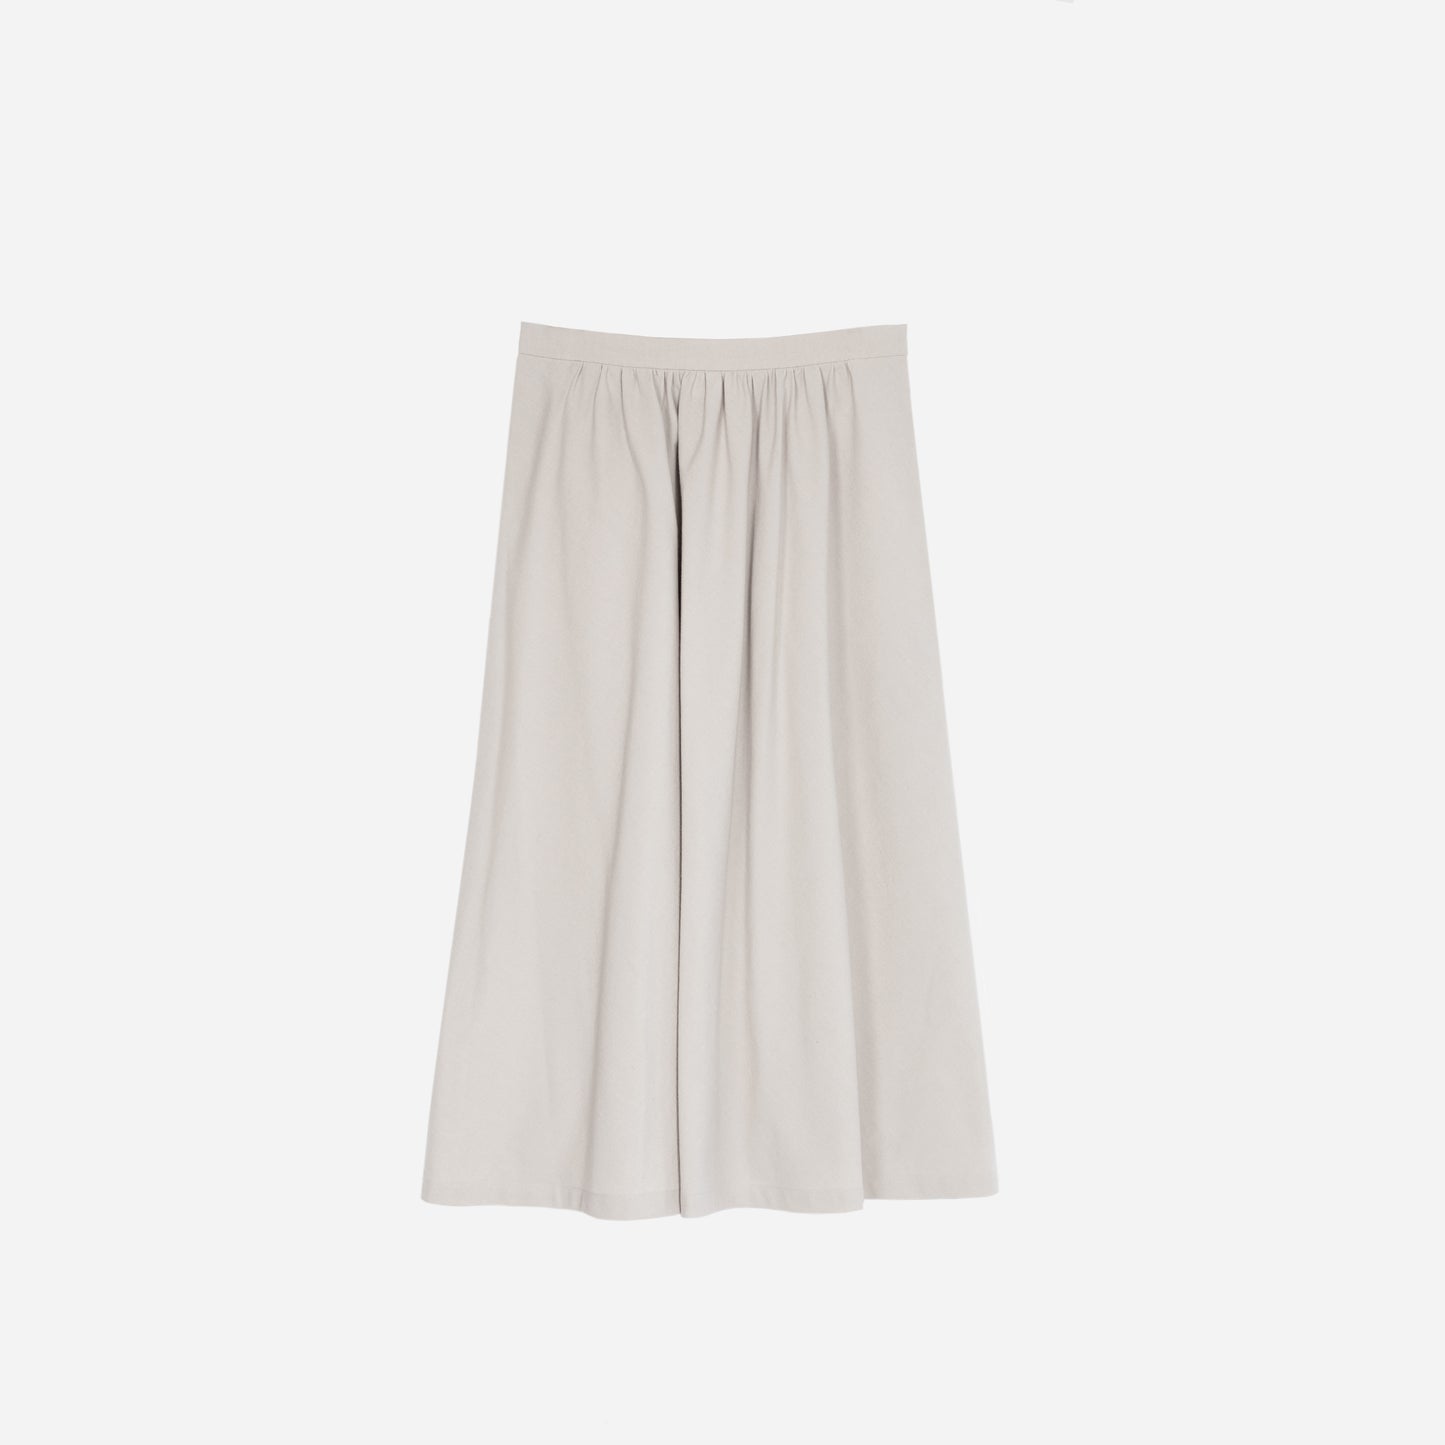 Light grey skirt